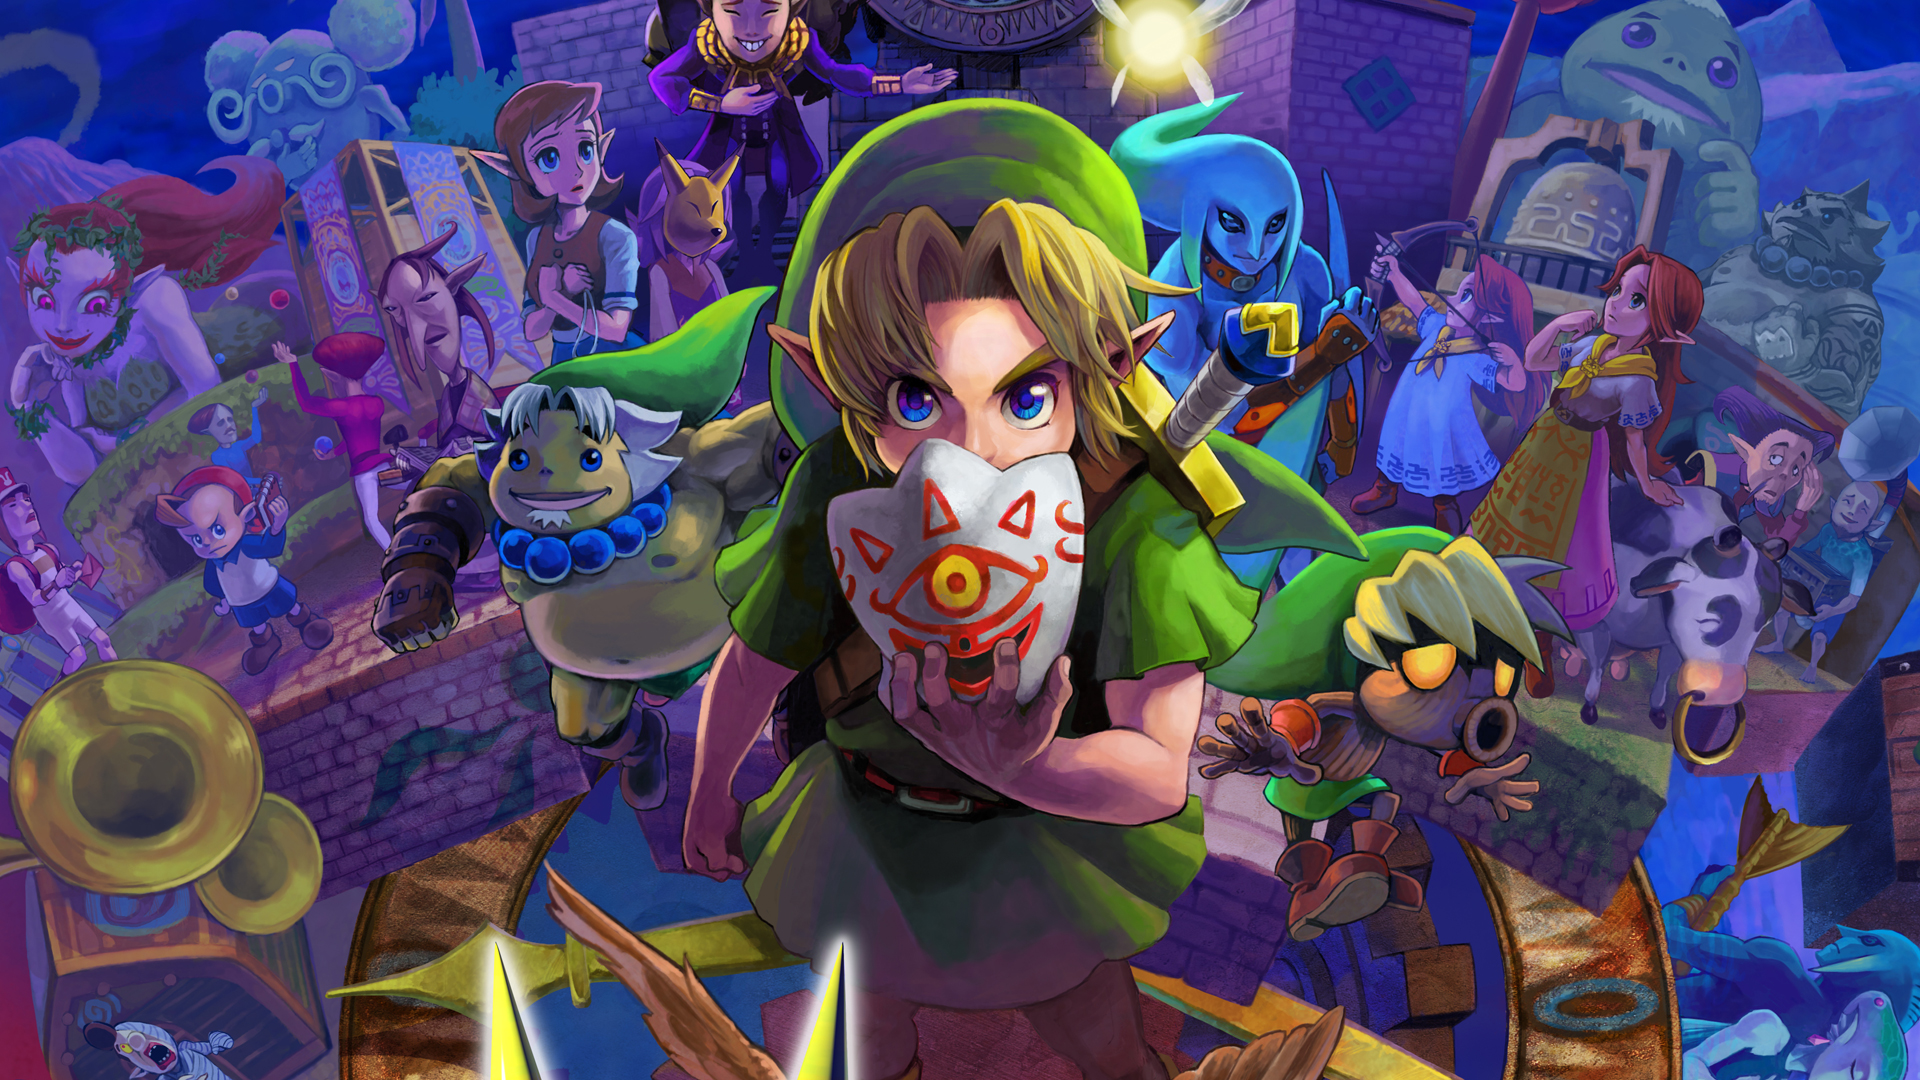 HQ The Legend Of Zelda: Majora's Mask Wallpapers | File 1706.5Kb